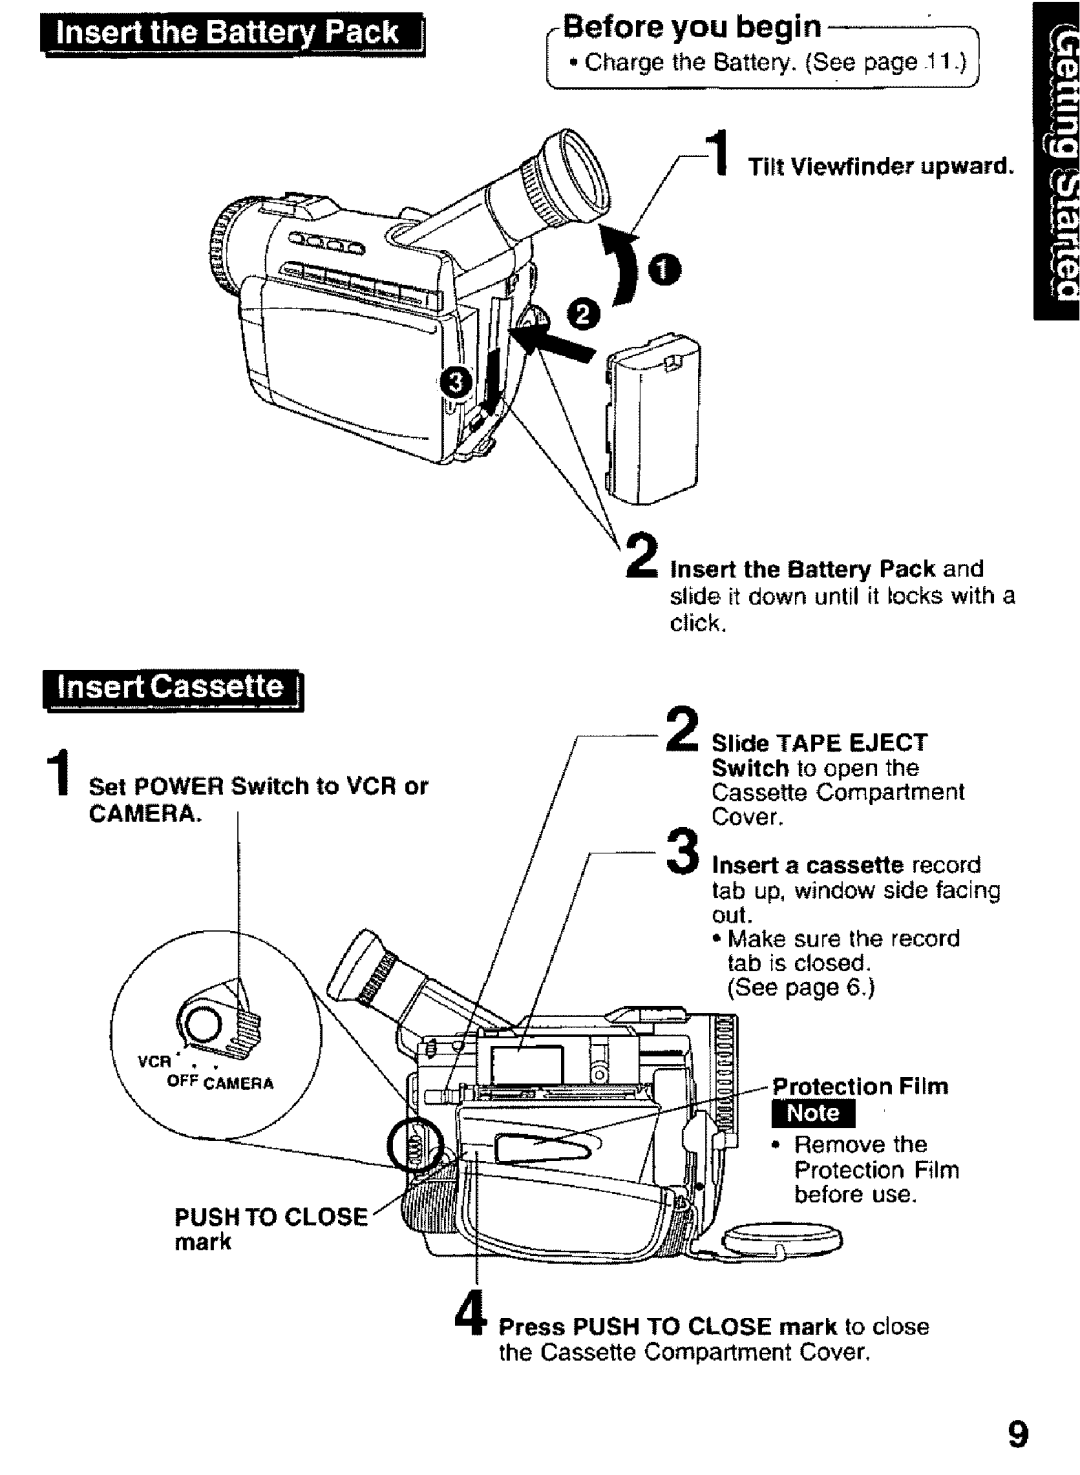 Panasonic PV-DV101 manual iBefore you begin, IBCl 